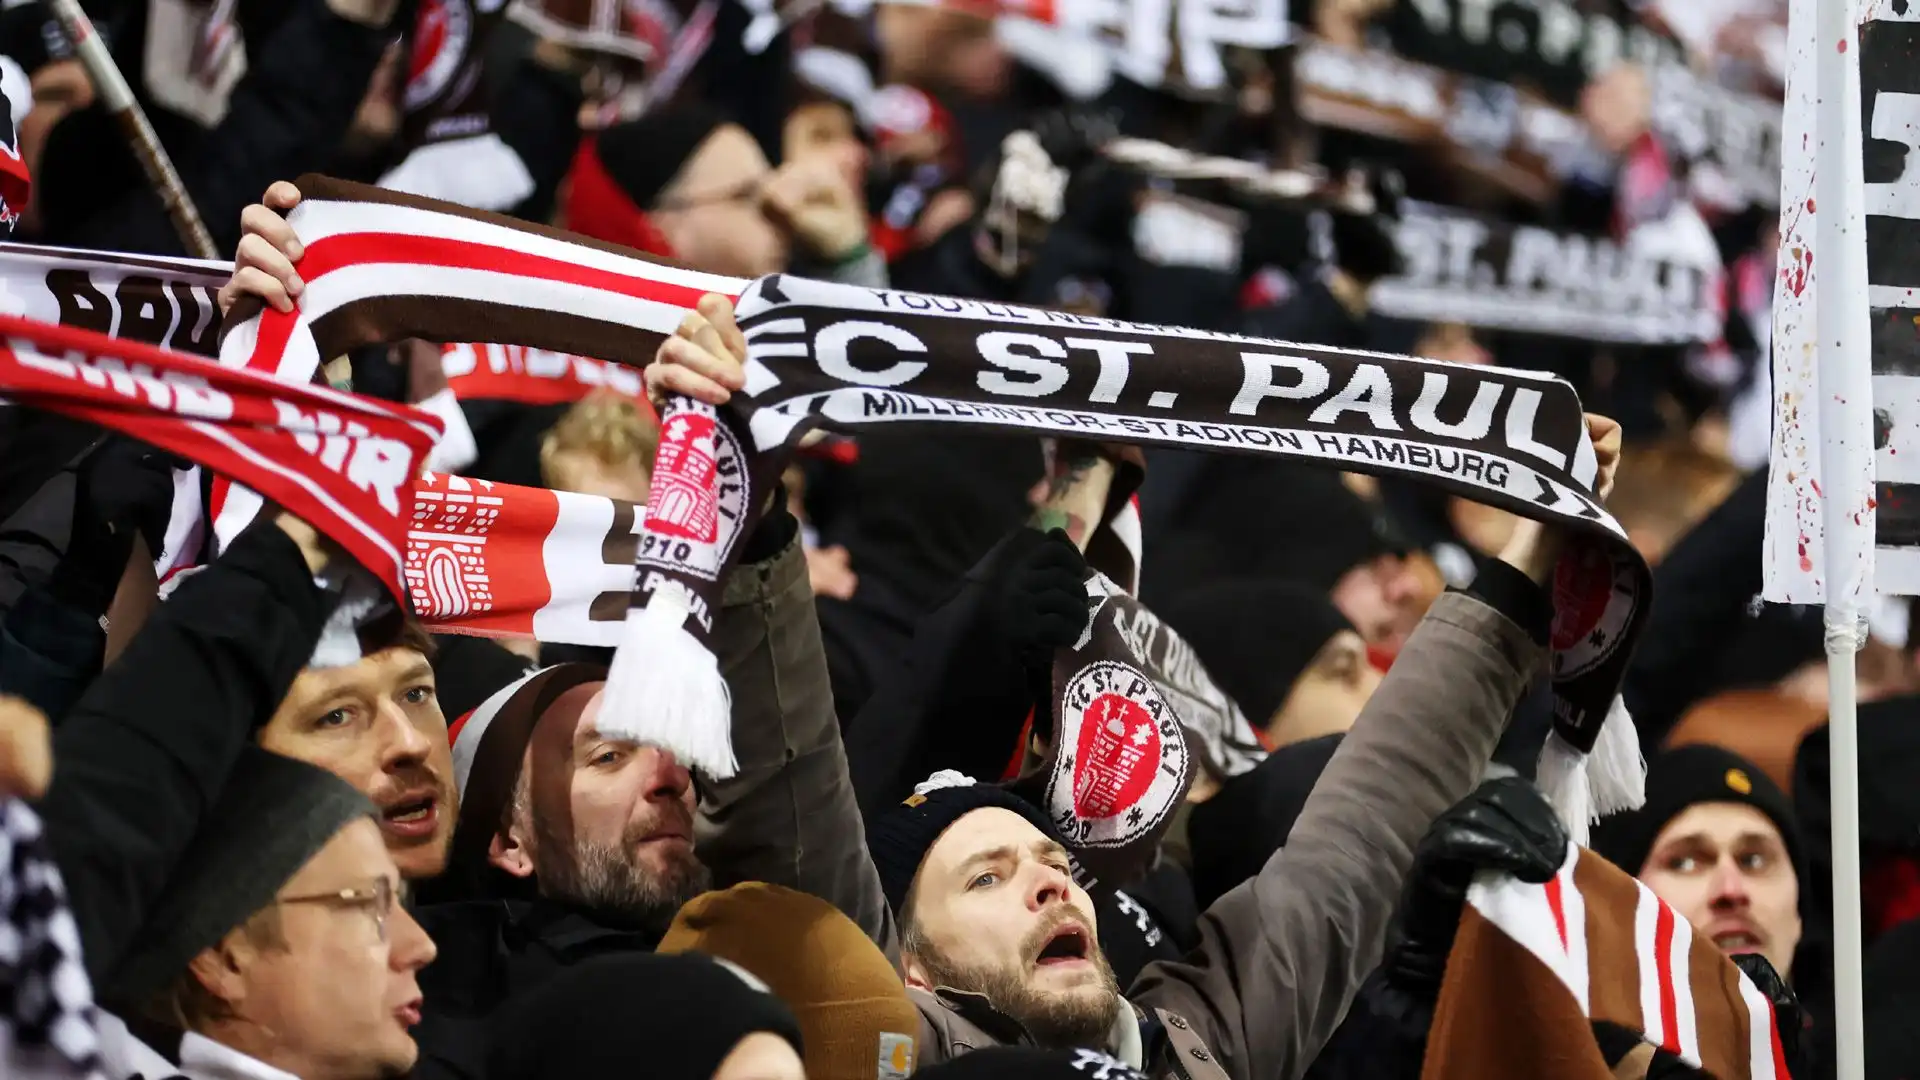 Nonostante il doppio vantaggio i tifosi del St. Pauli non erano tranquilli